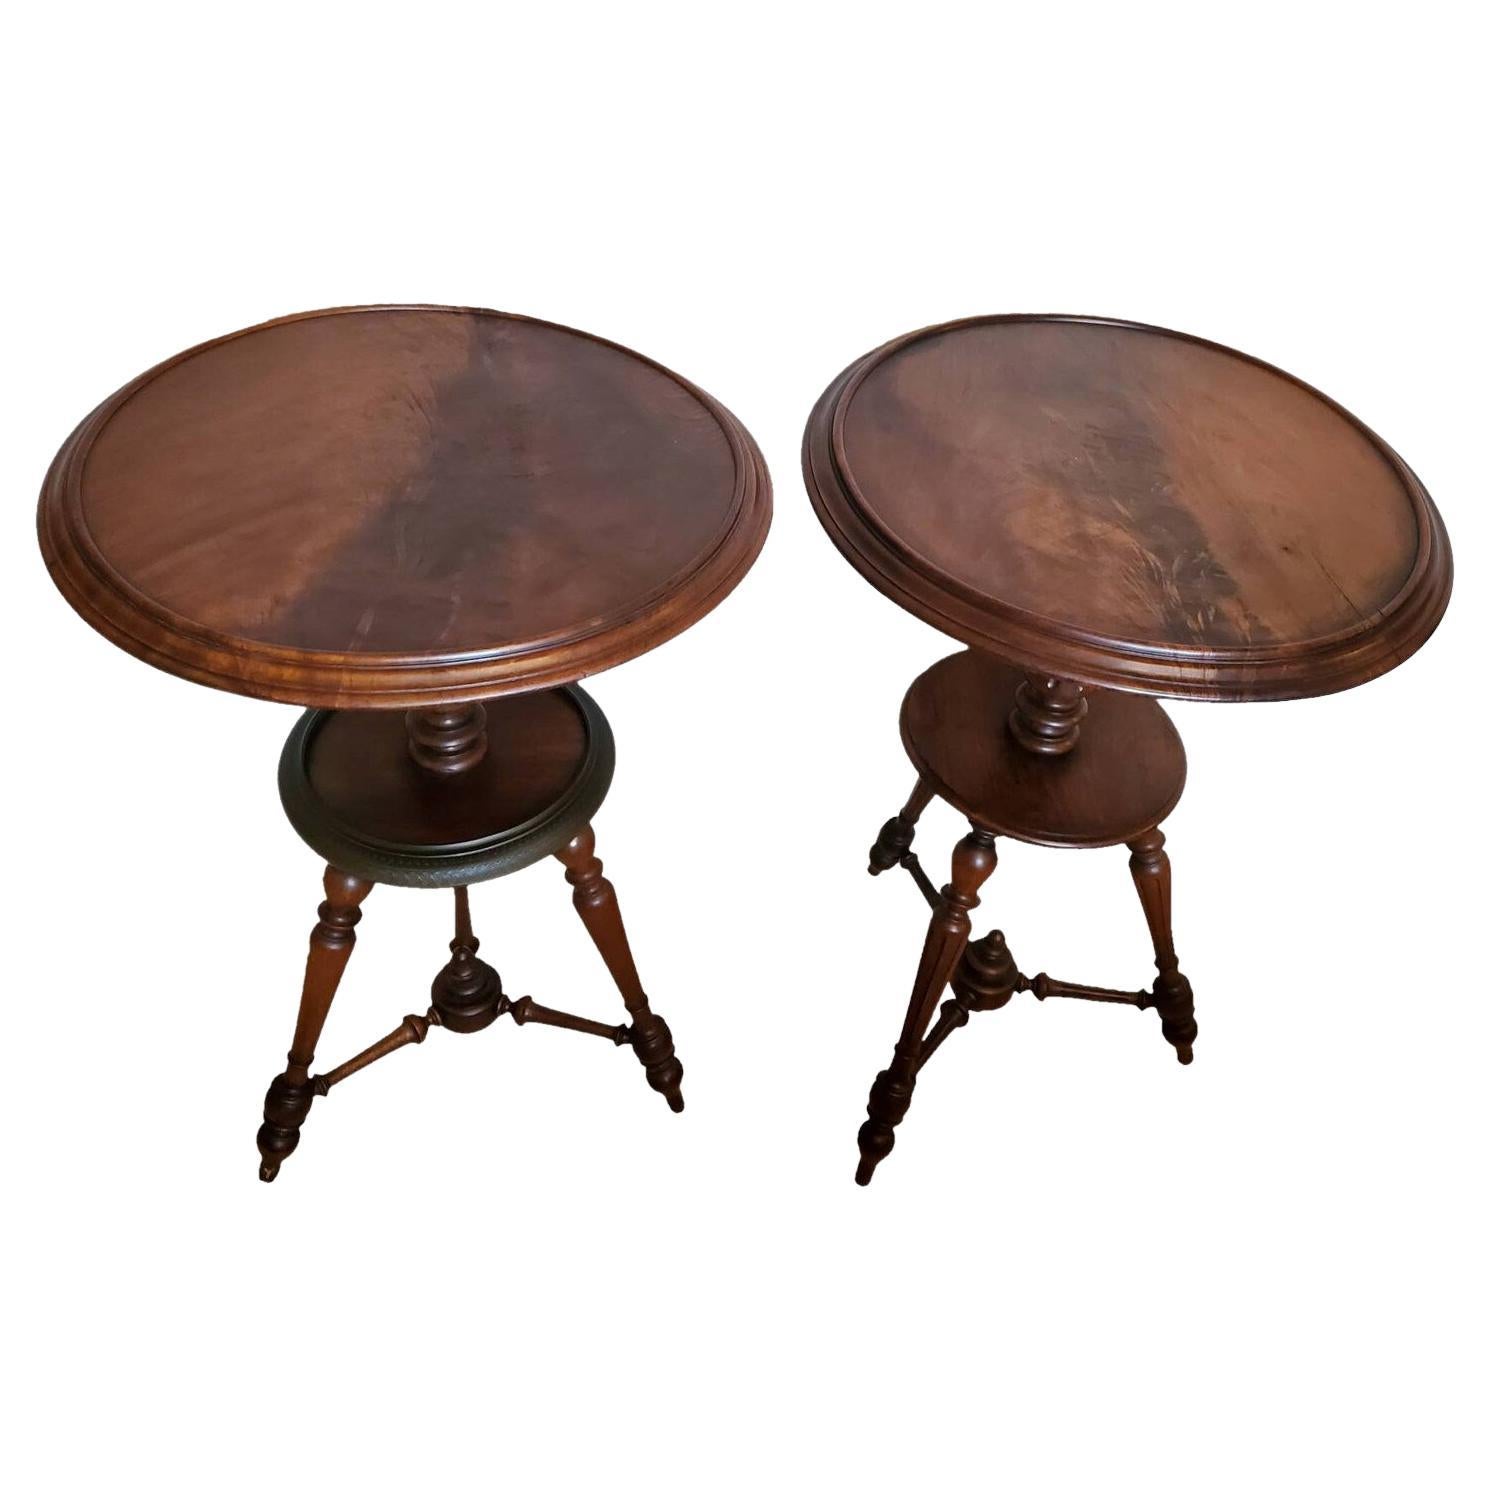 Rare paire de tables à thé françaises anciennes en acajou flamboyant avec plateau en forme de plat